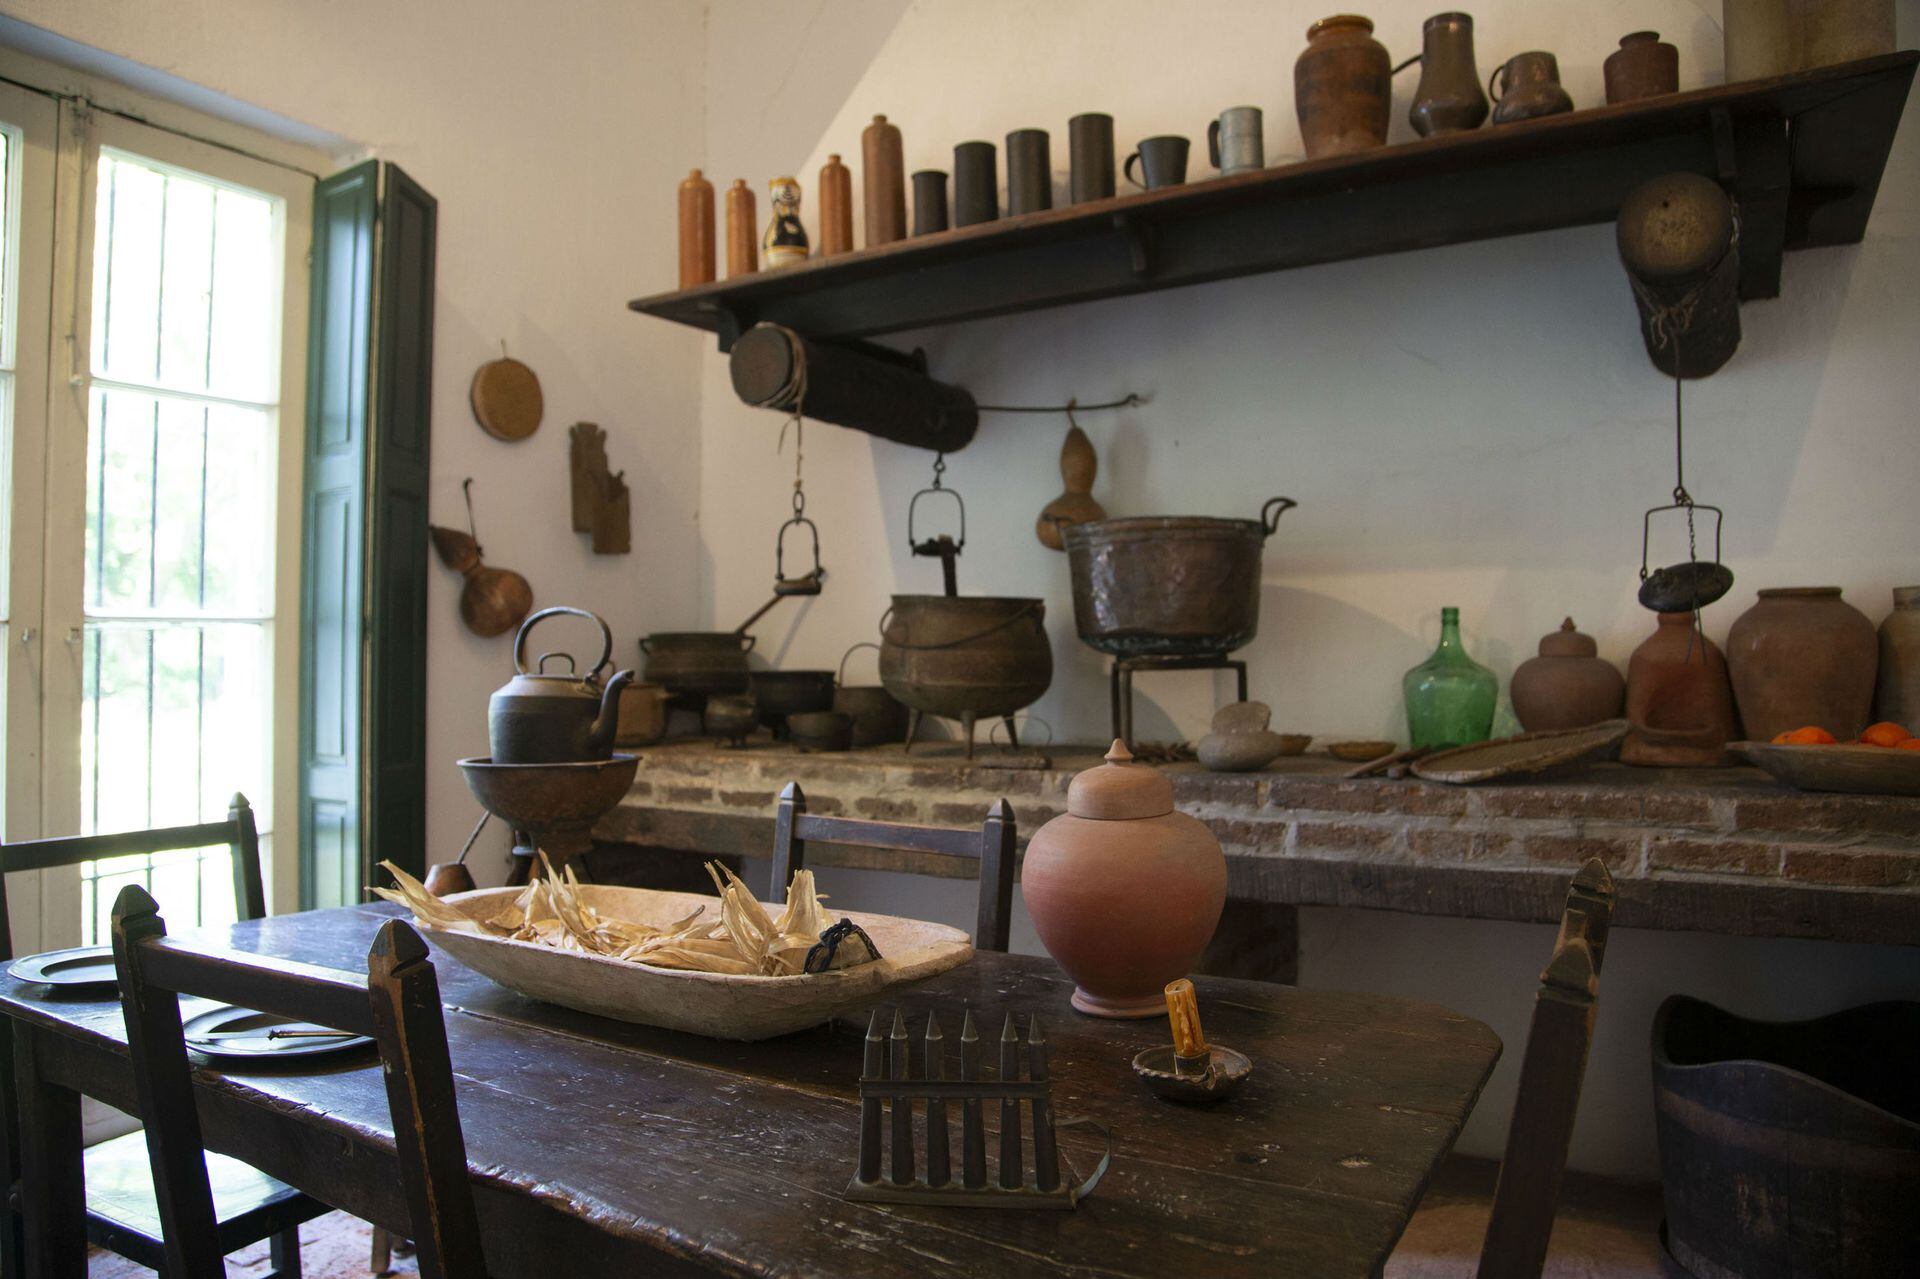 Objetos de la época colonial en al cocina